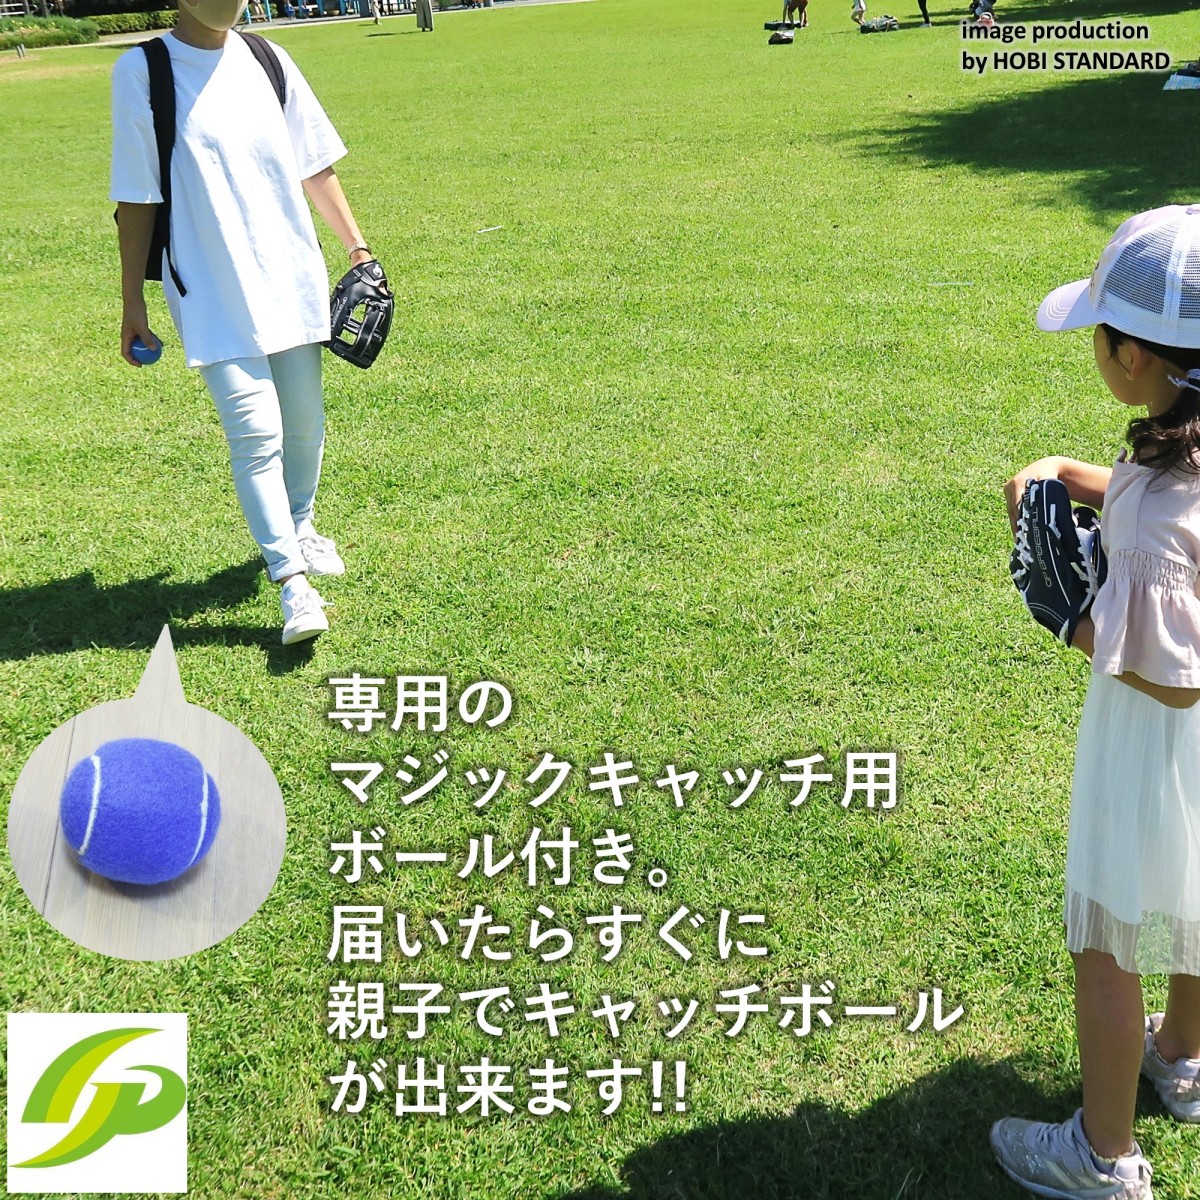 [GP] бейсбол родители . перчатка комплект [ взрослый /2~6 лет для ] Koshien . место игрок .. специальный мяч есть простой catch мяч все черный большой .WBC ( взрослый правый бросание / ребенок правый для метания )